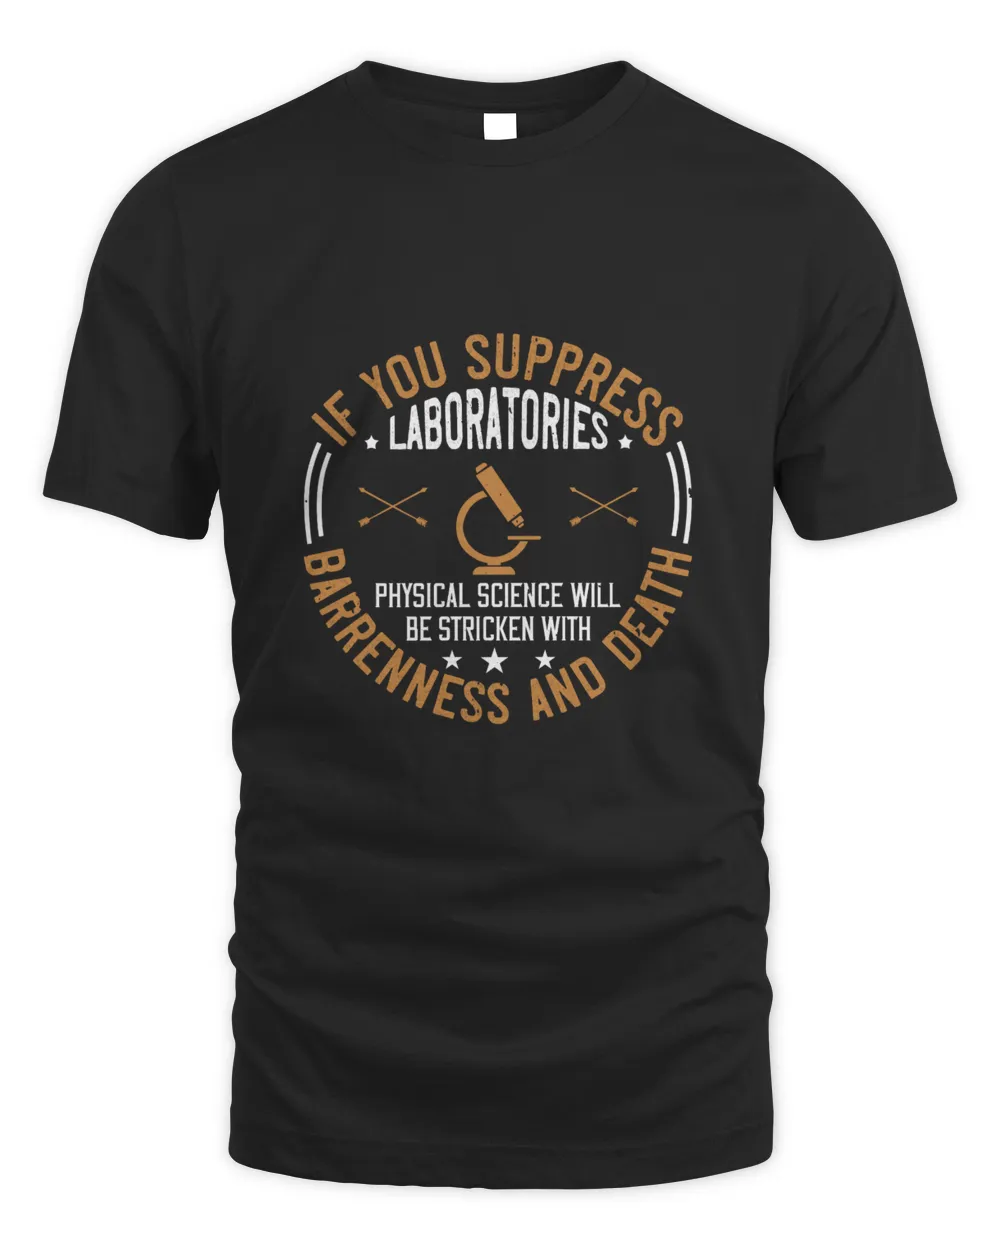 If you suppress laboratories-01